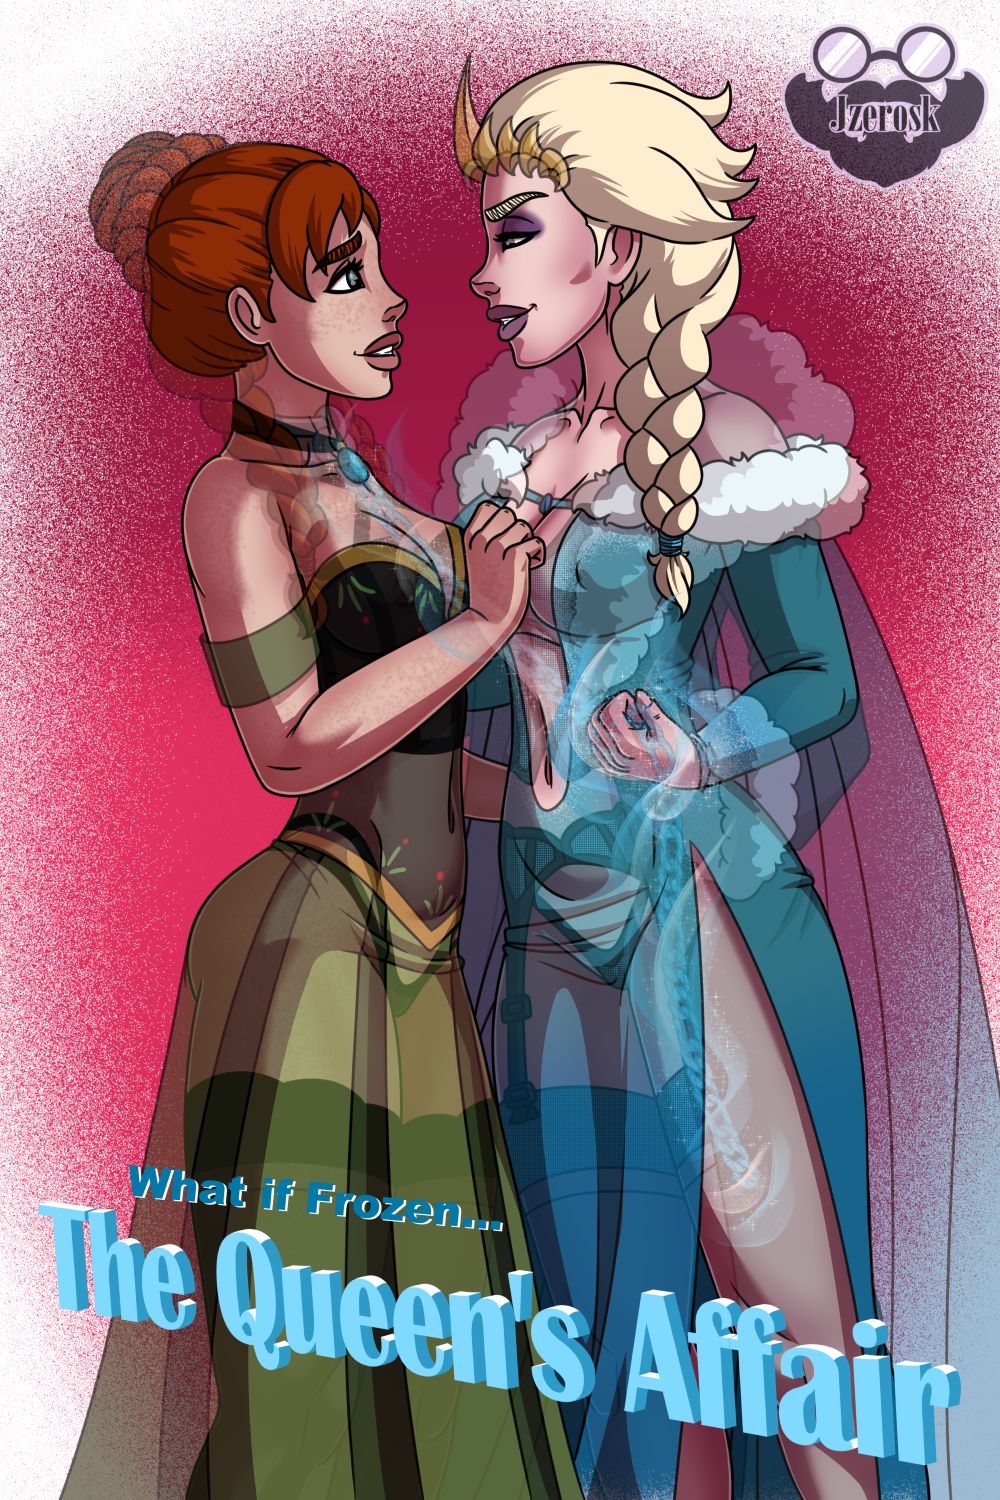 Frozen Hot Lesbian Sex - The Queen's Affair (Frozen) by JZerosk - Porn Cartoon Comics